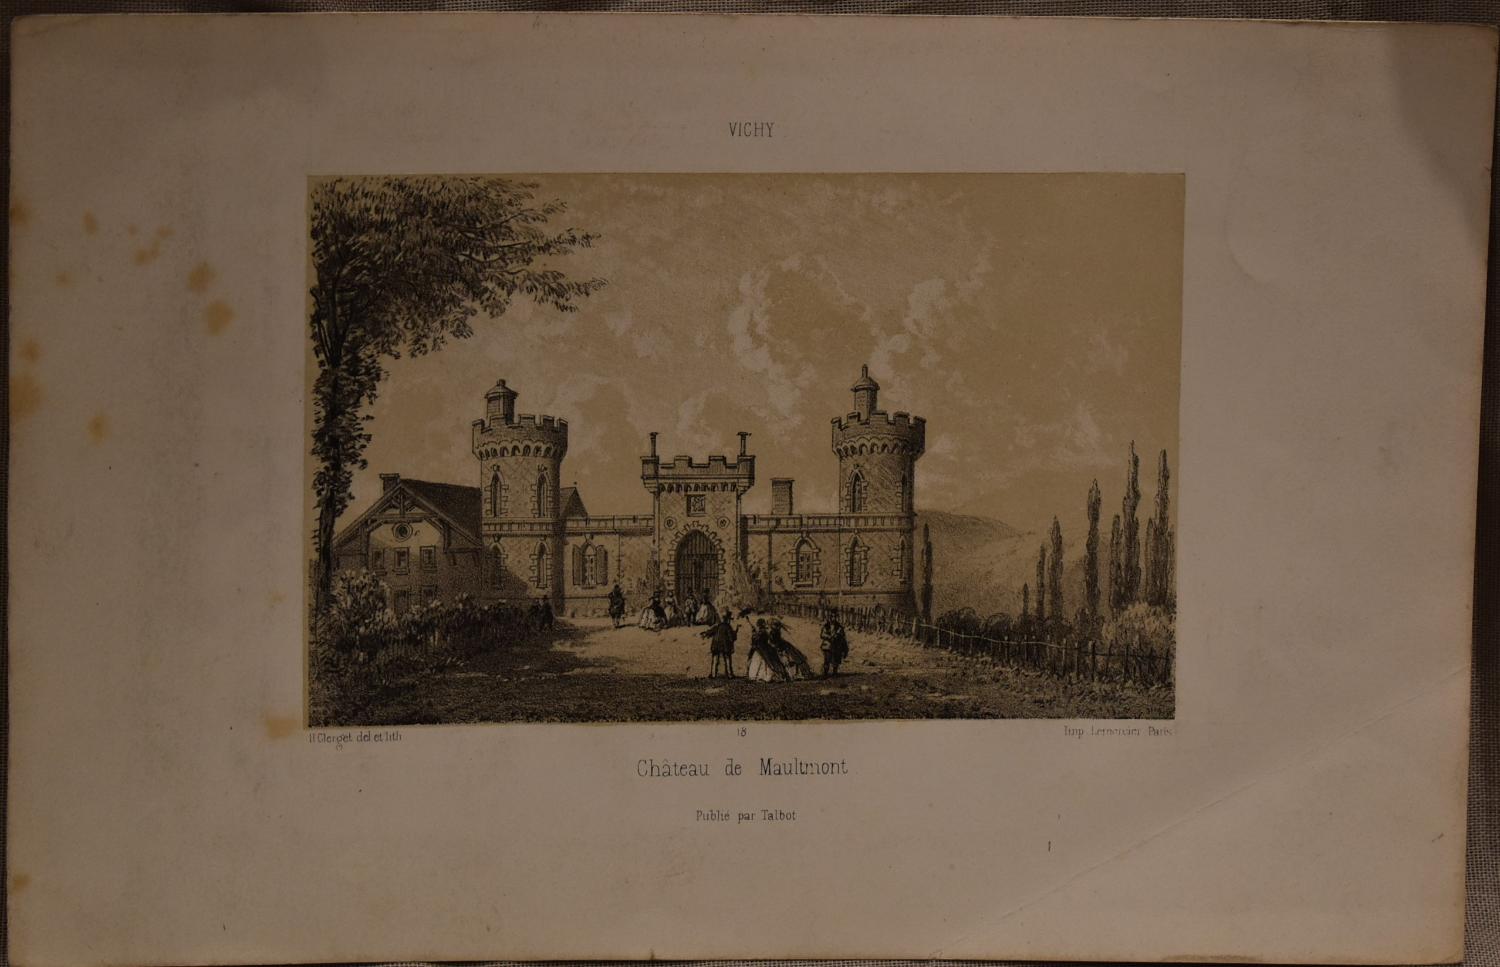 Lithographie d'Hubert Clerget - " Château de Maulmont "